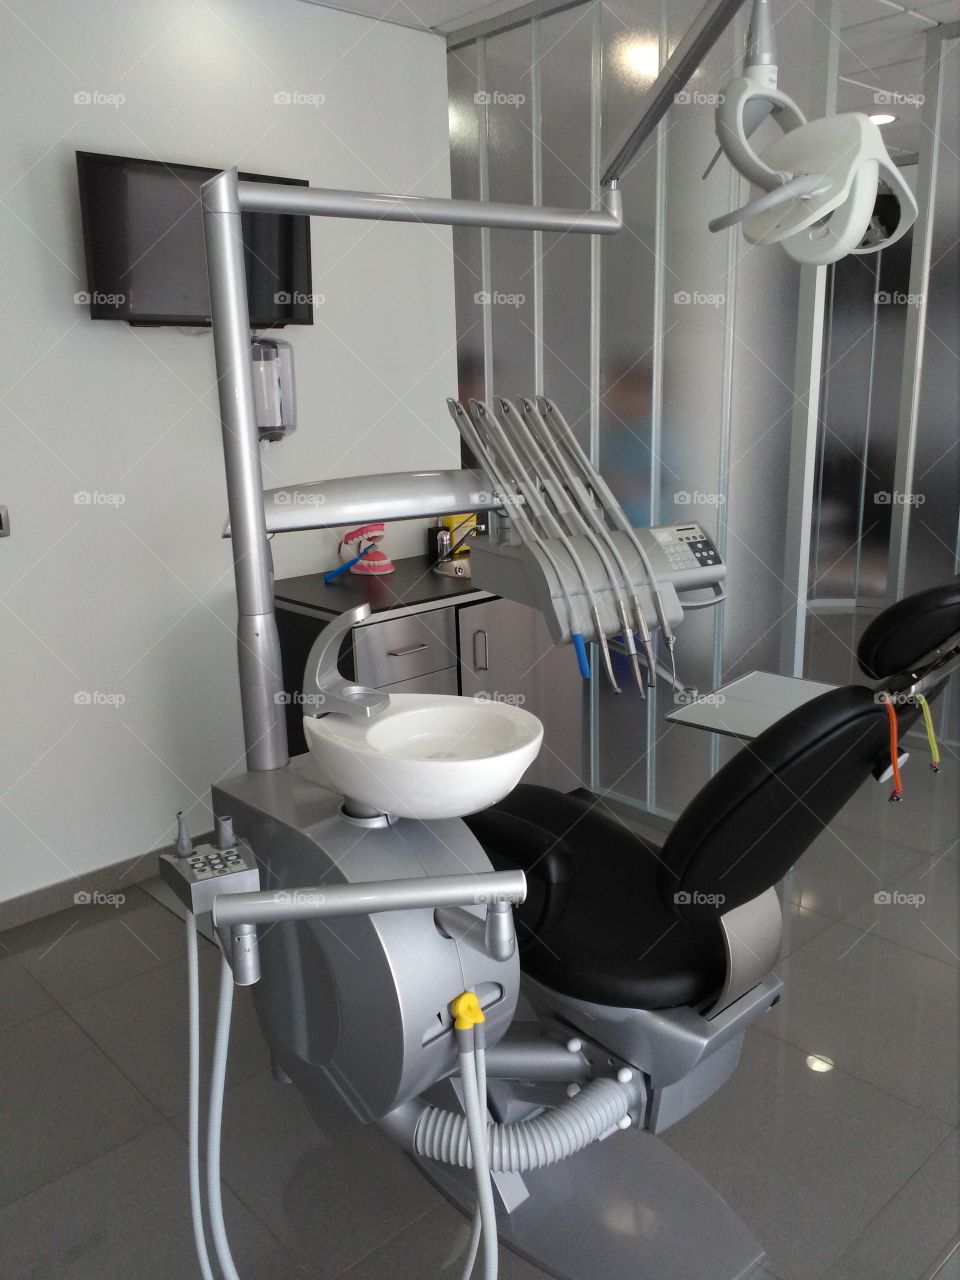 Dentist's Chair